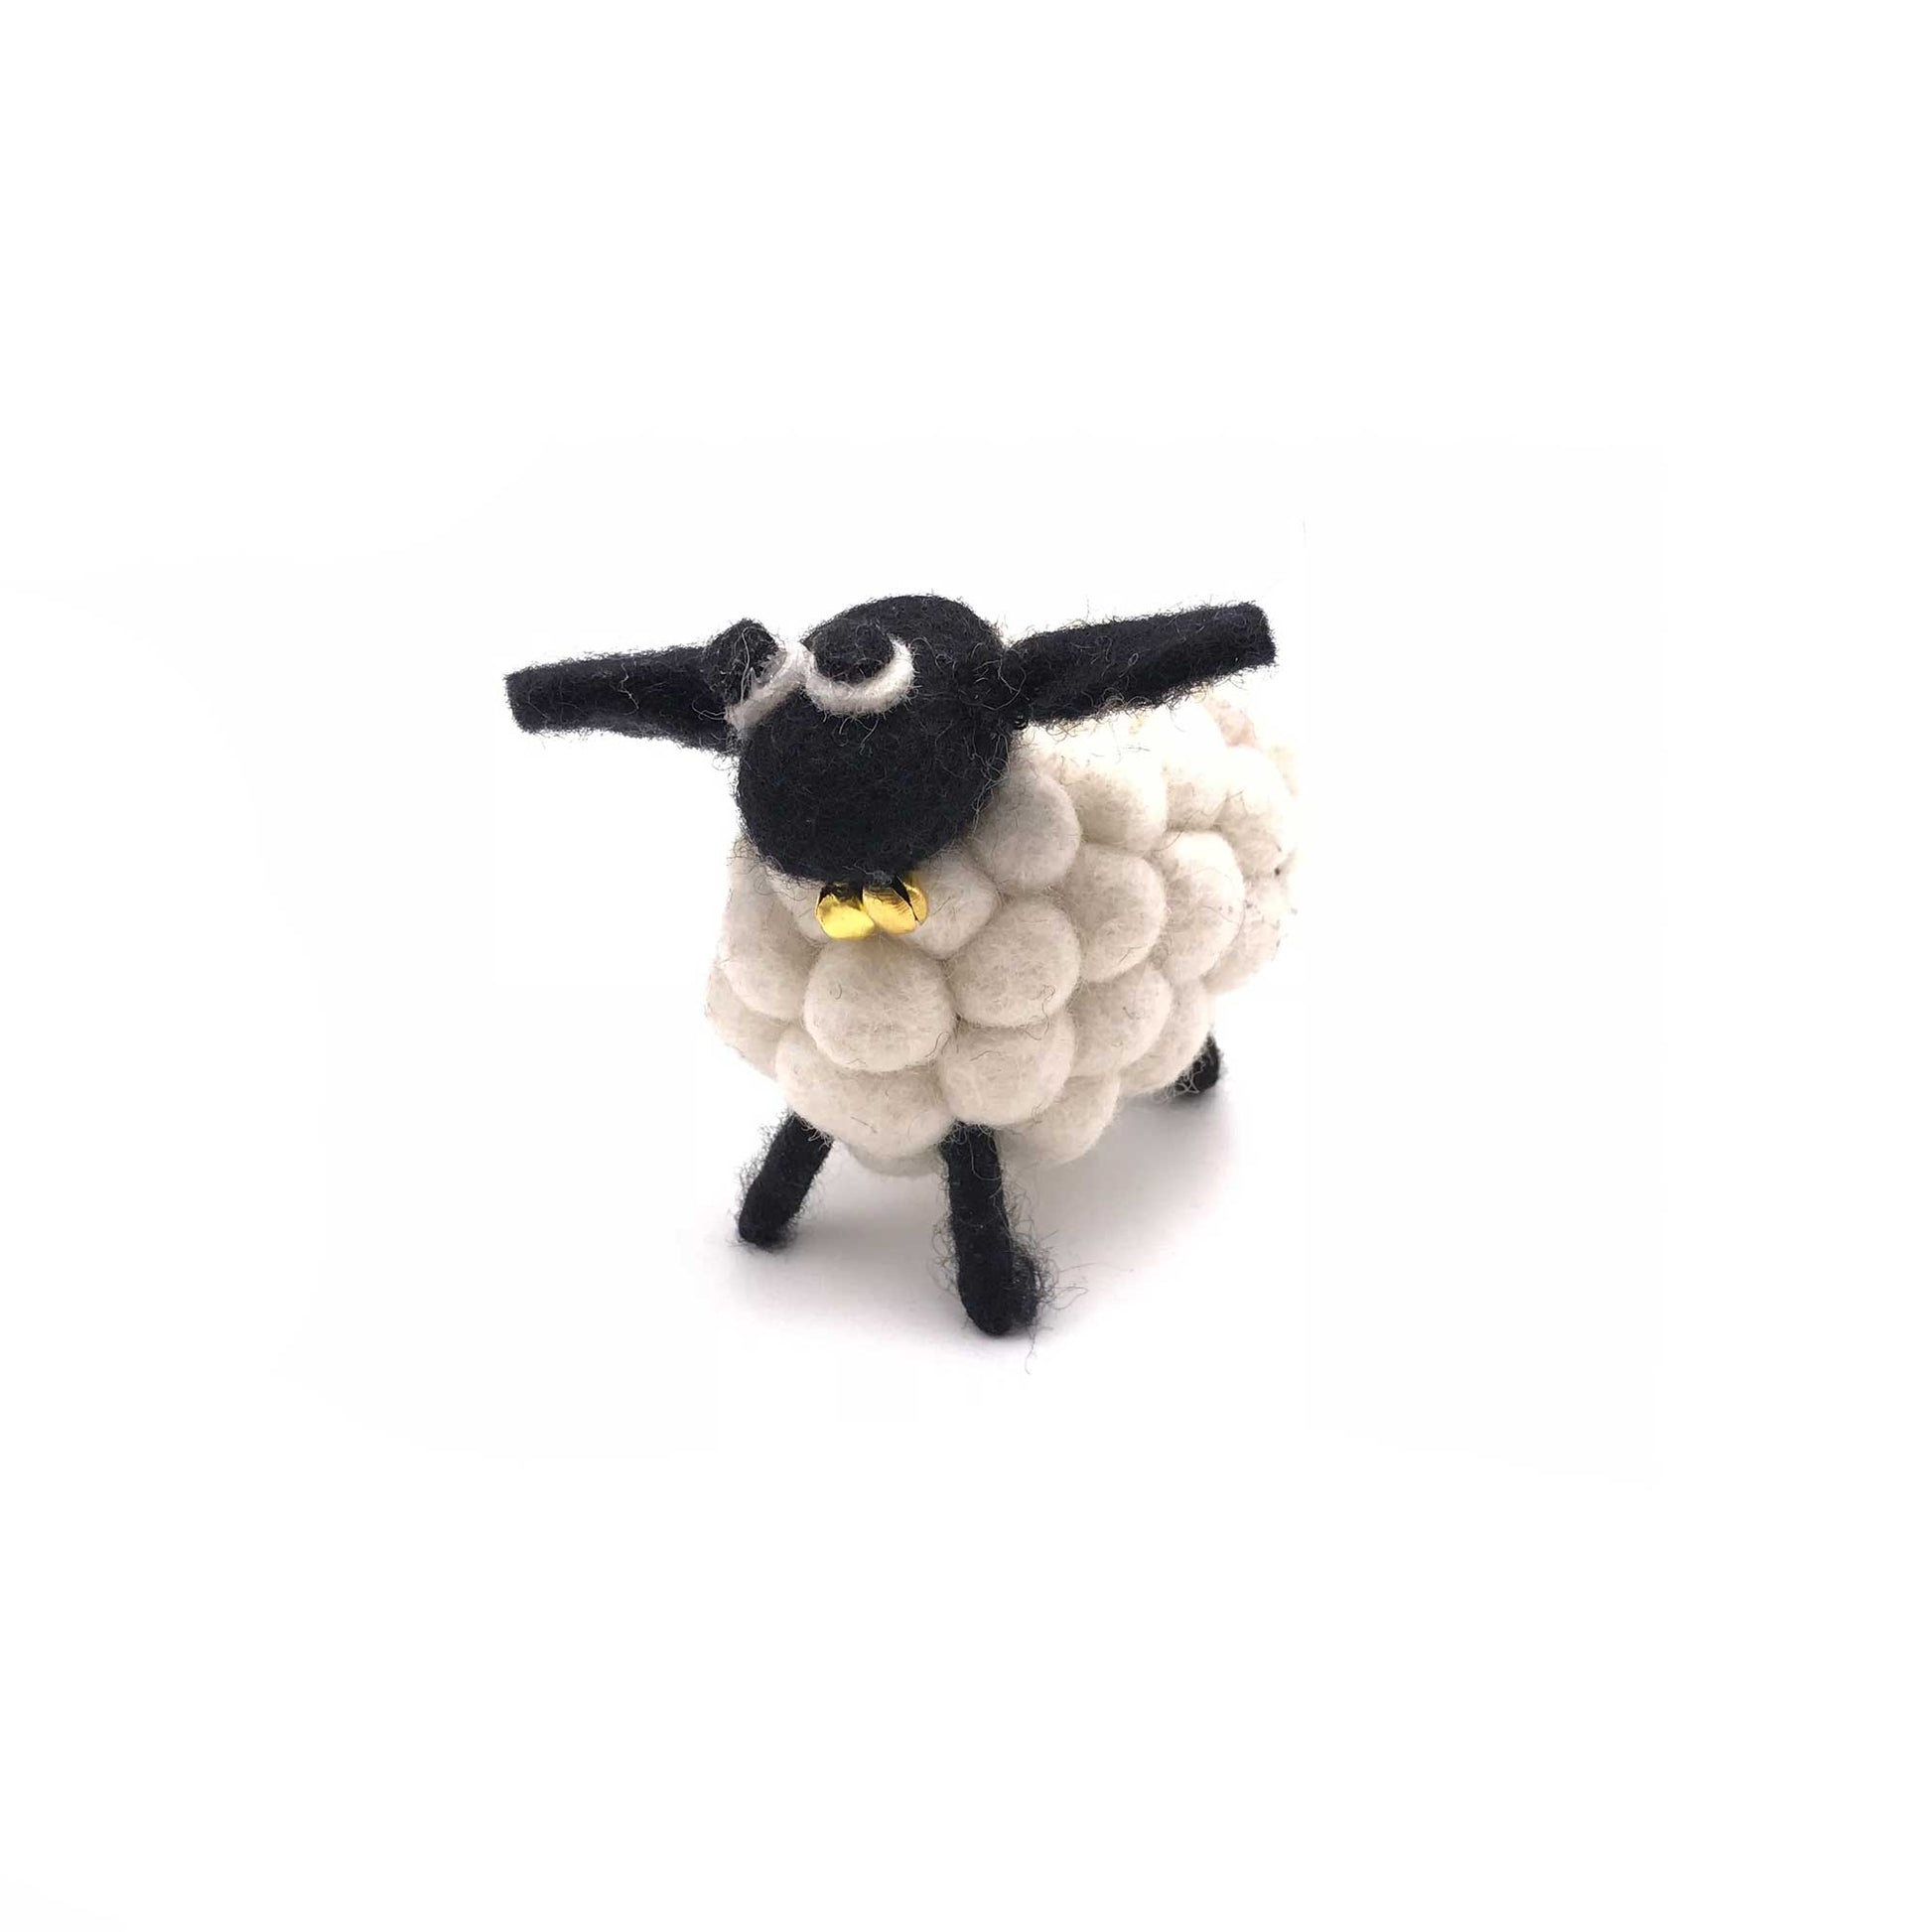 felt sheep for home decor